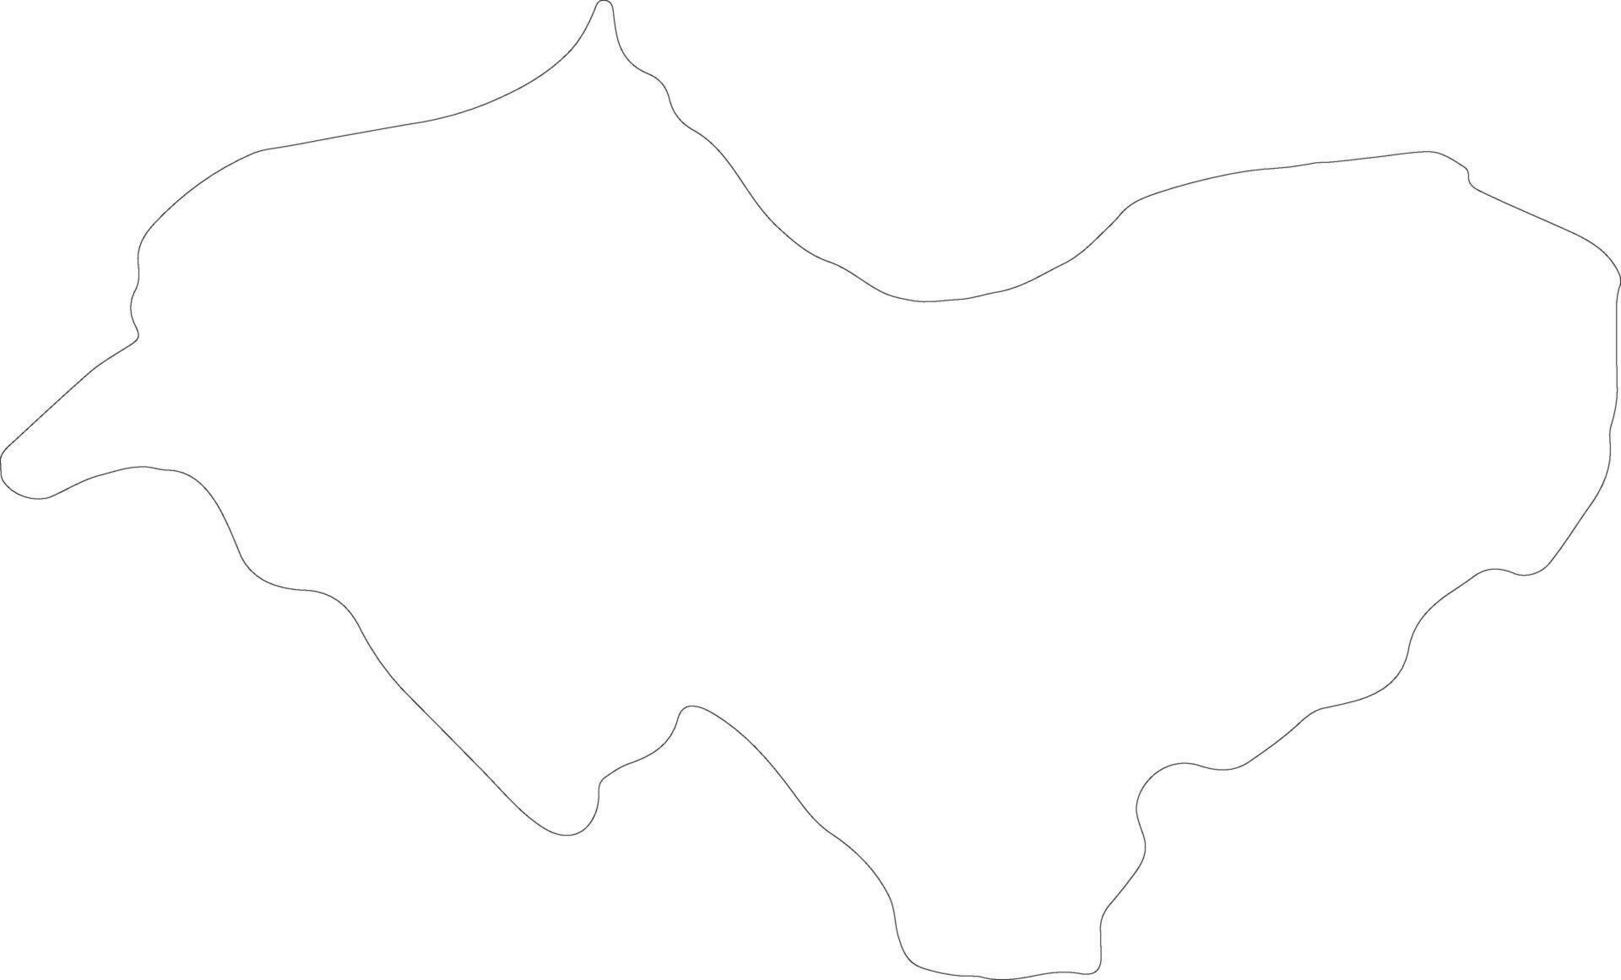 canar Ecuador contorno mapa vector